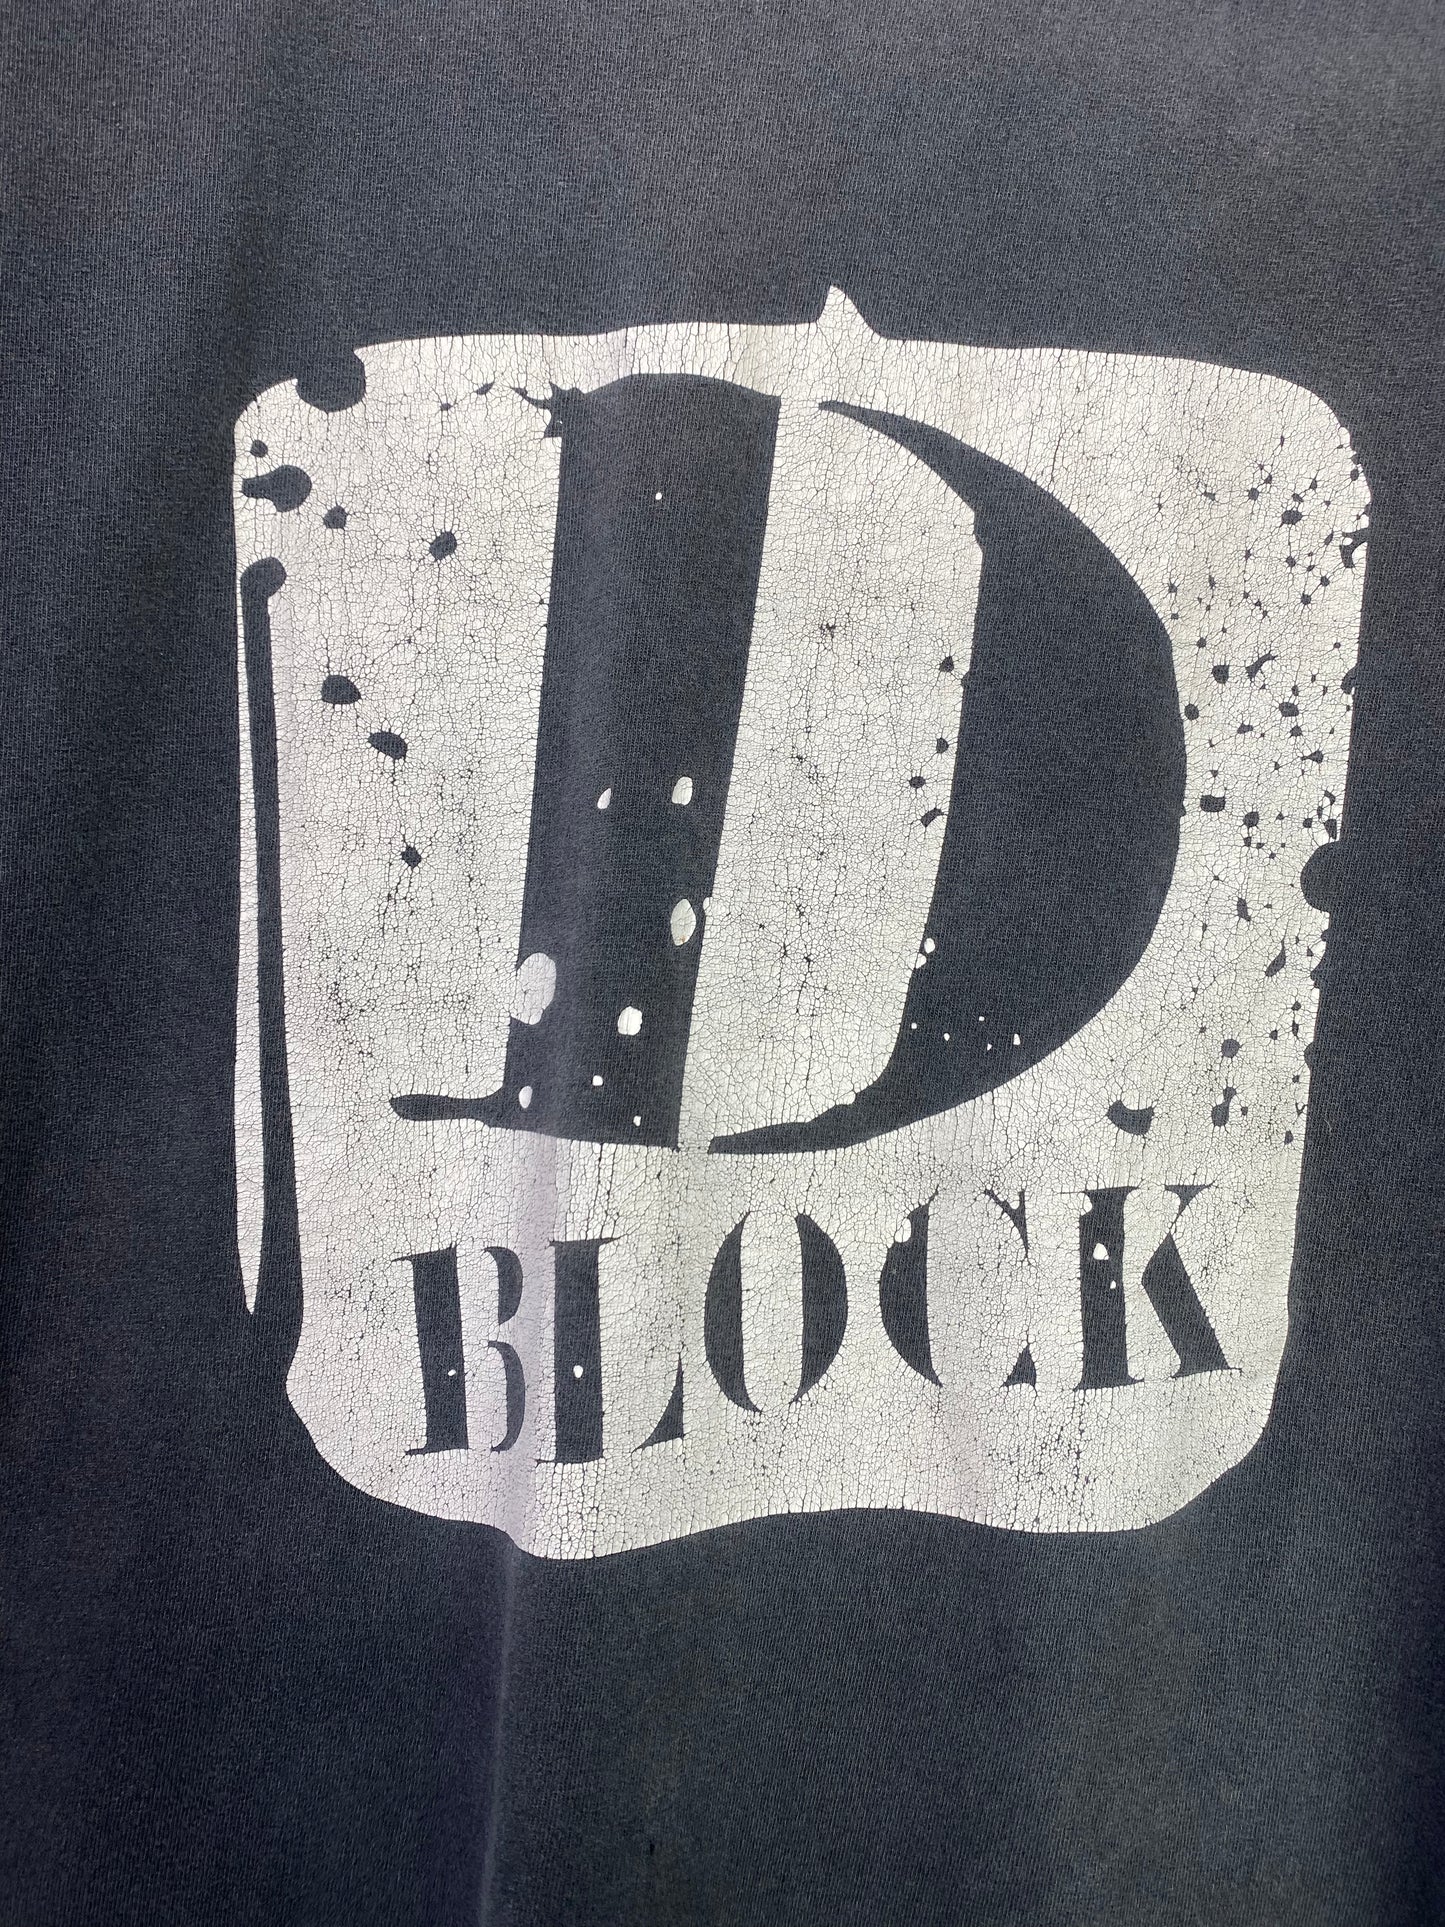 Early 00s D Block T-Shirt XL